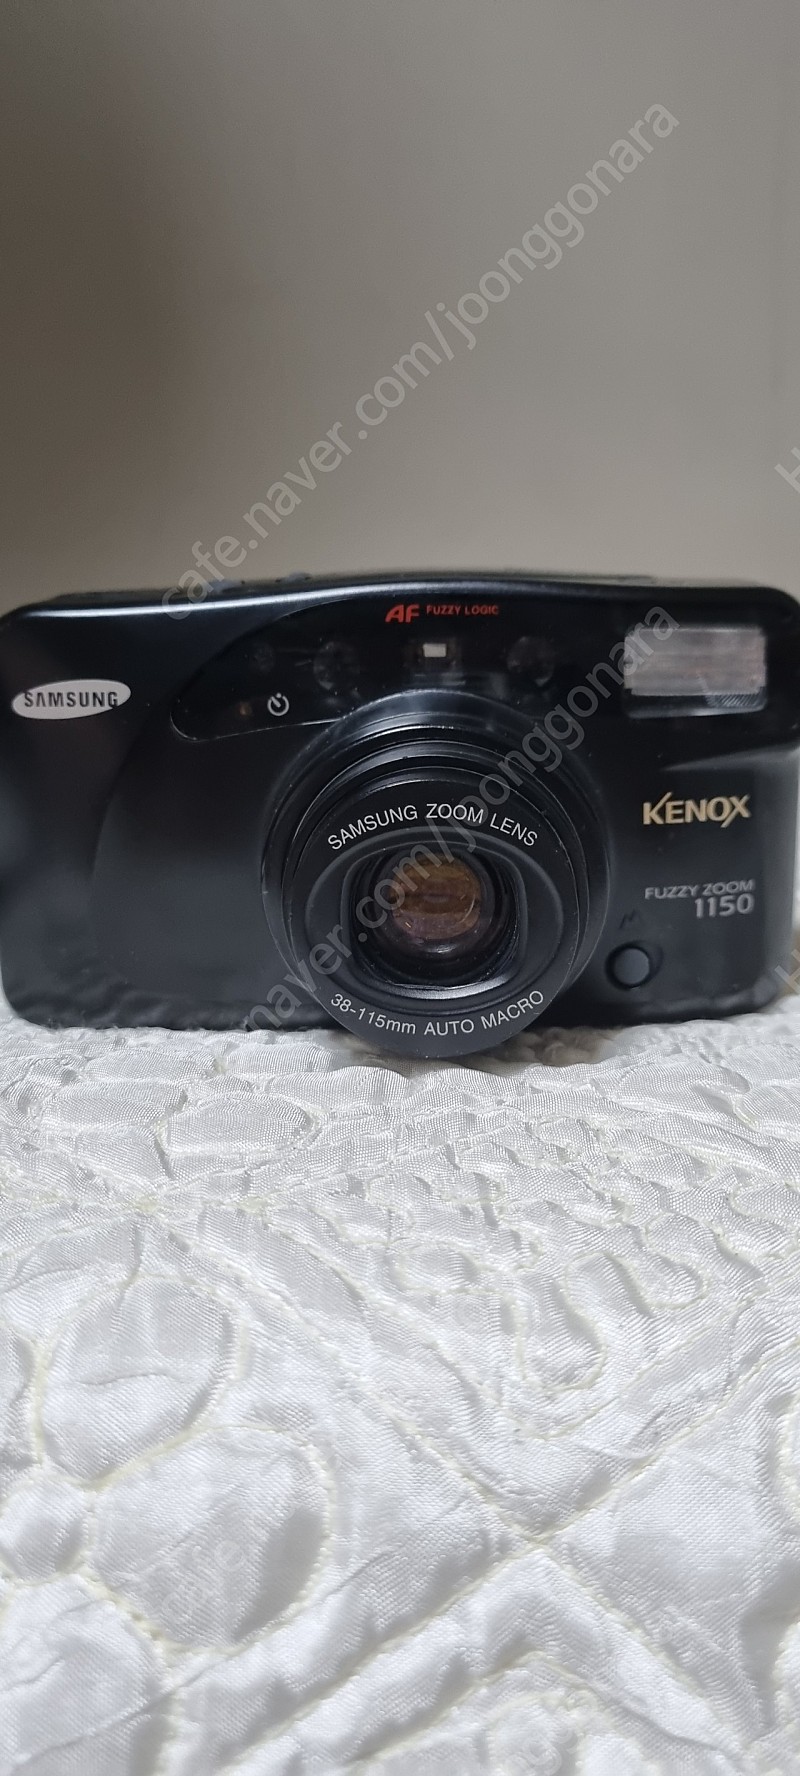 삼성 _ 케녹스 FUZZY -1150 필름카메라 판매합니다.